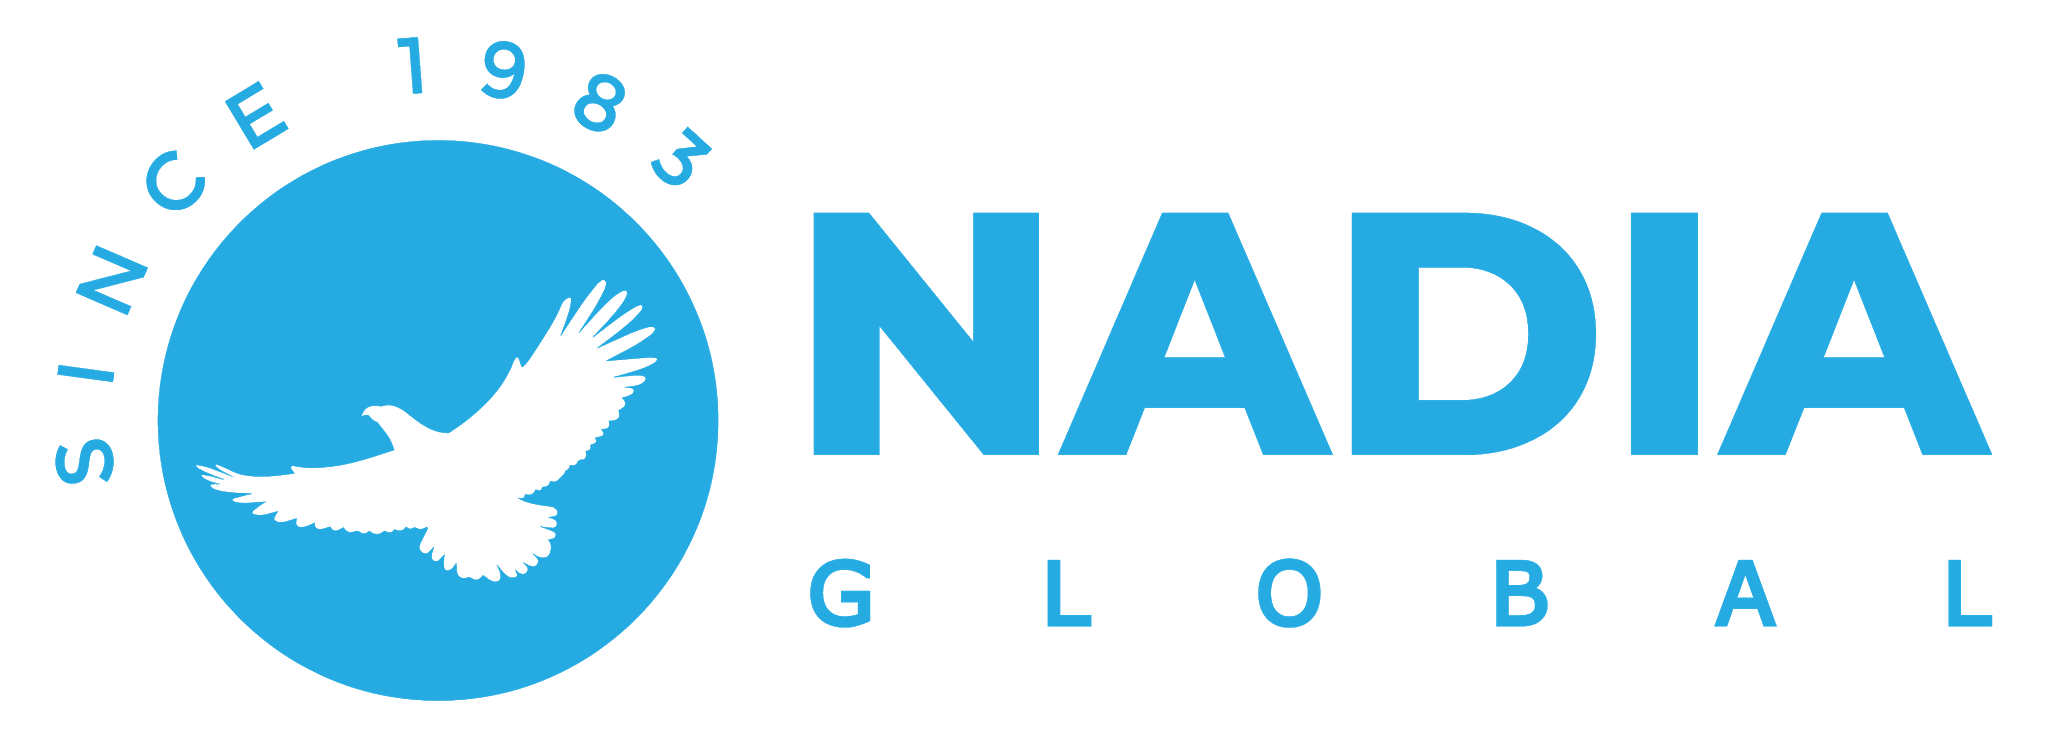 nadia-training-logo51 - Copy